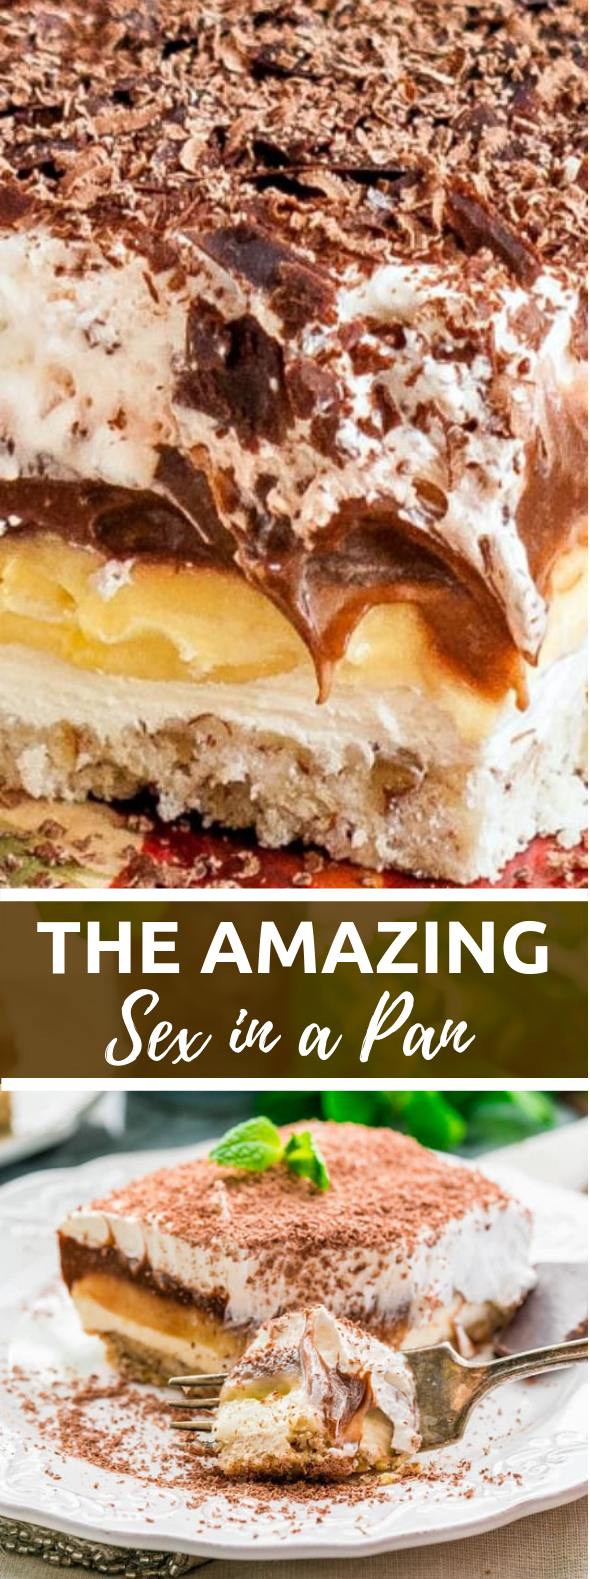 Sex in a Pan #bestdessert #puddingdessert